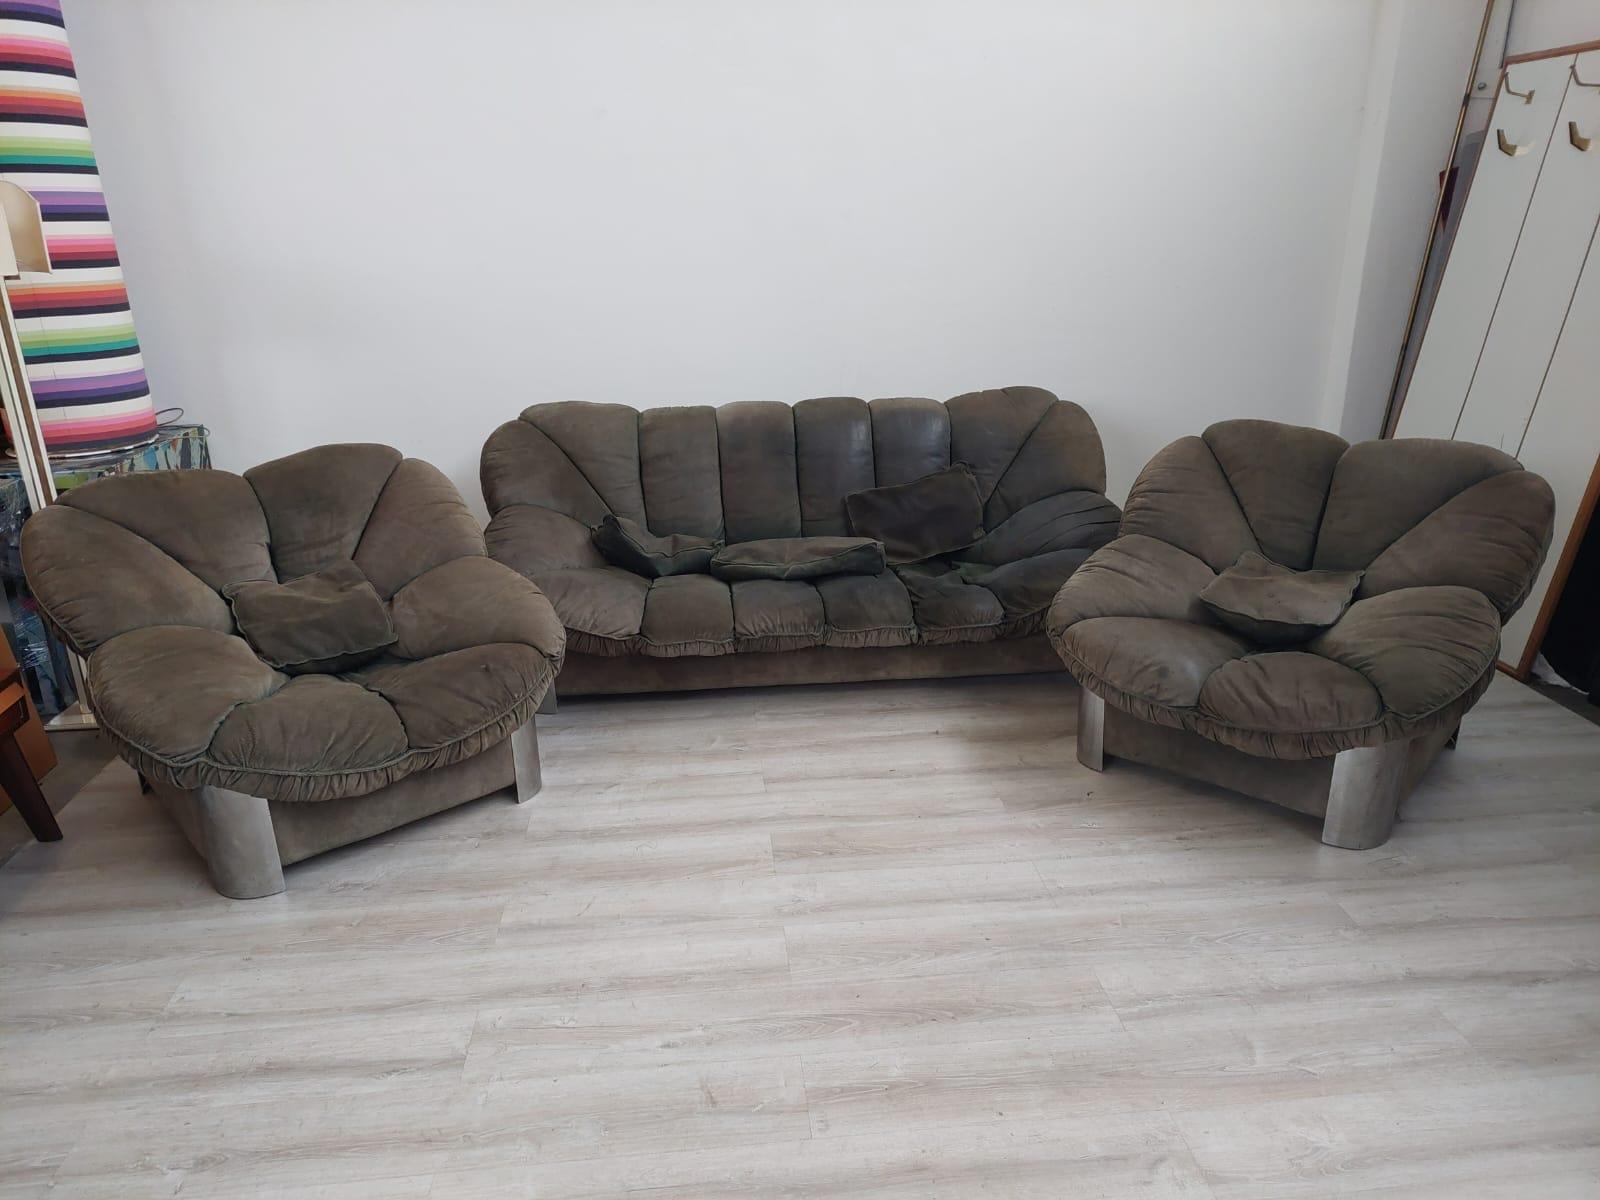 Italienisches Space-Age-Wildleder- und Edelstahl-Wohnzimmer-Set bestehend aus einem Sofa und zwei Sesseln.
Das Set ist in gutem Vintage-Zustand, weist Gebrauchsspuren auf, ist aber noch in gutem Zustand.
Die Struktur erweist sich dennoch als sehr